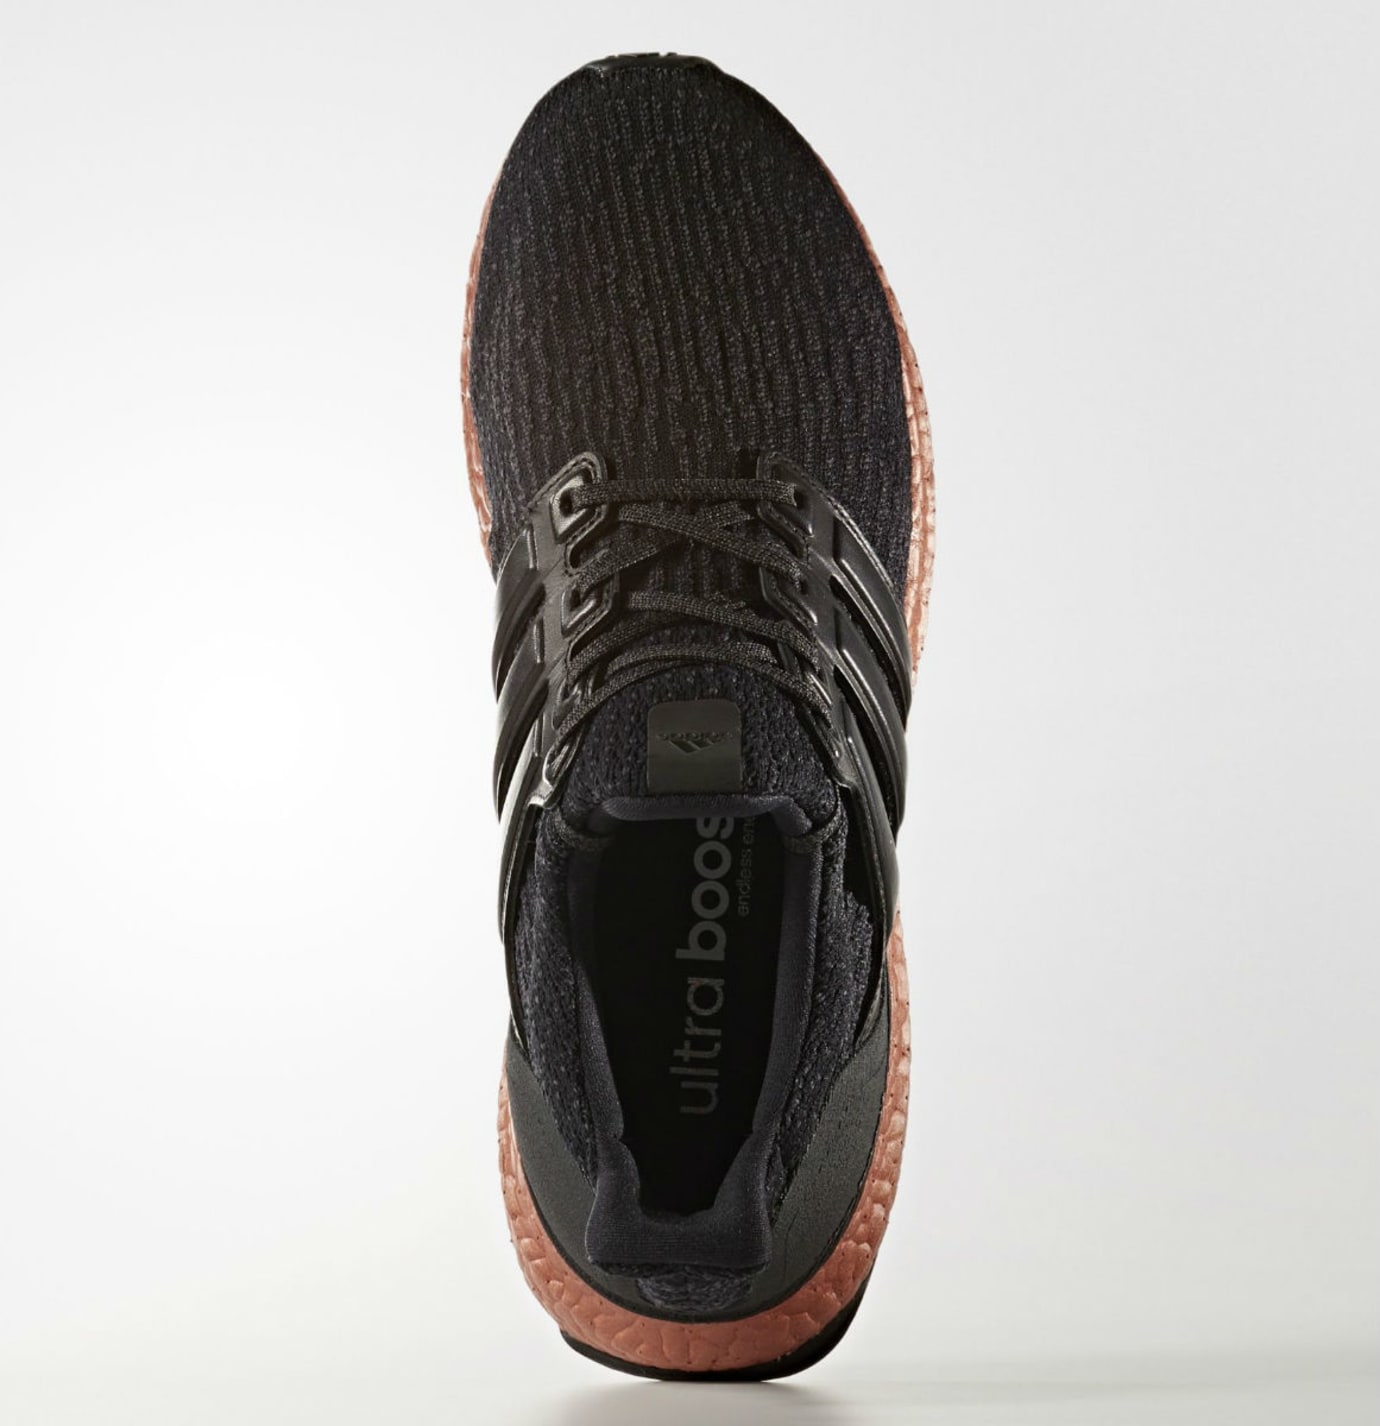 Adidas Ultra Boost 3.0 Black Bronze Sole Release Date Top